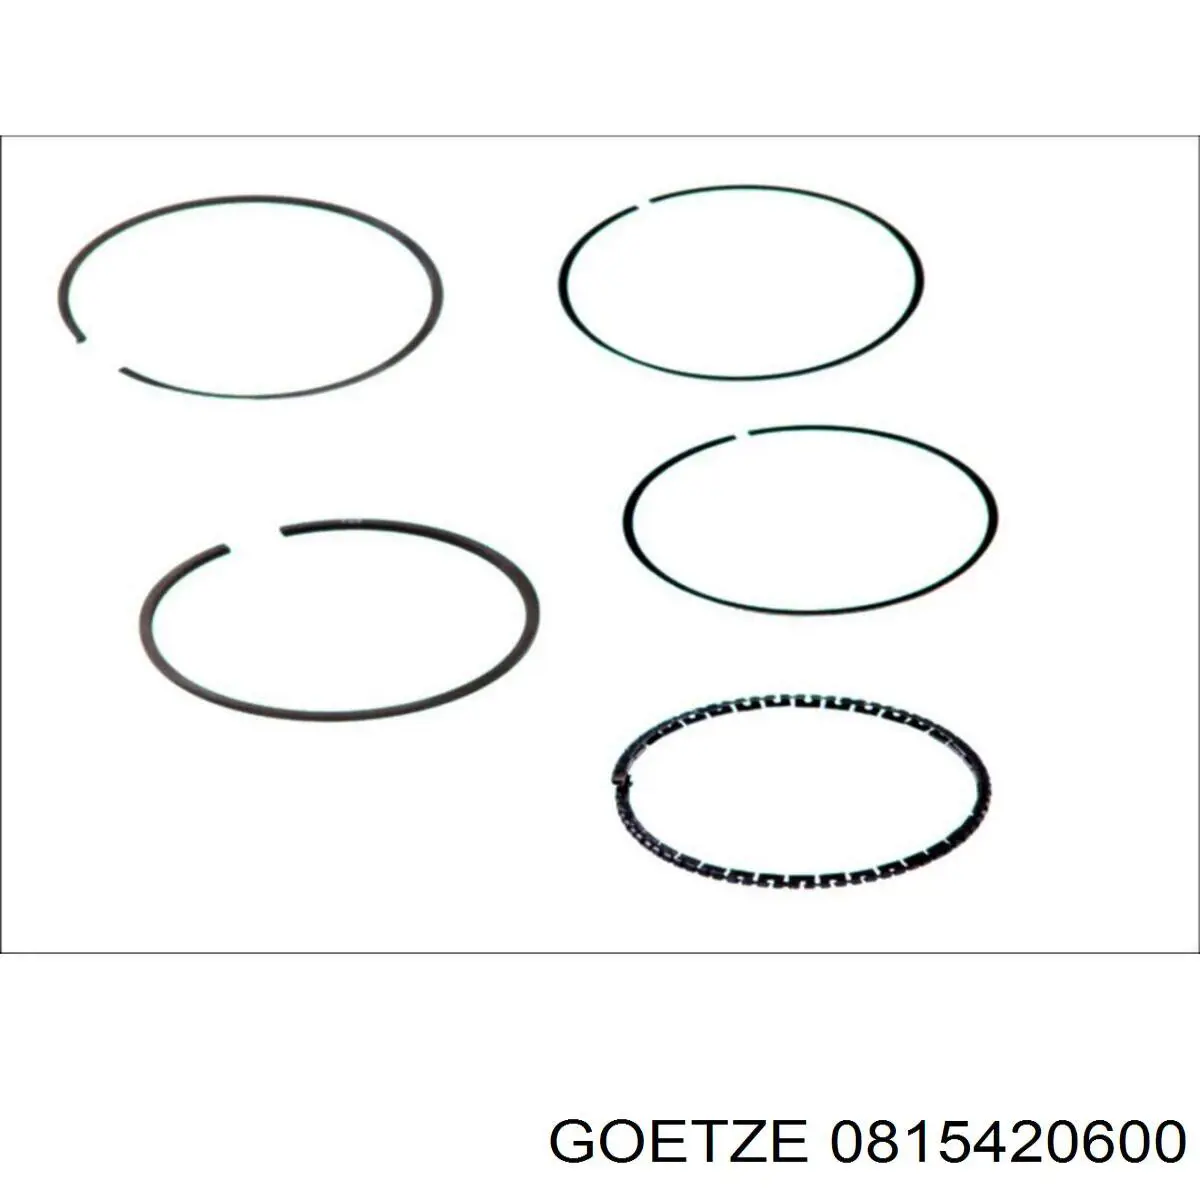 Кольца поршневые на 1 цилиндр, 2-й ремонт (+0,50) GOETZE 0815420600